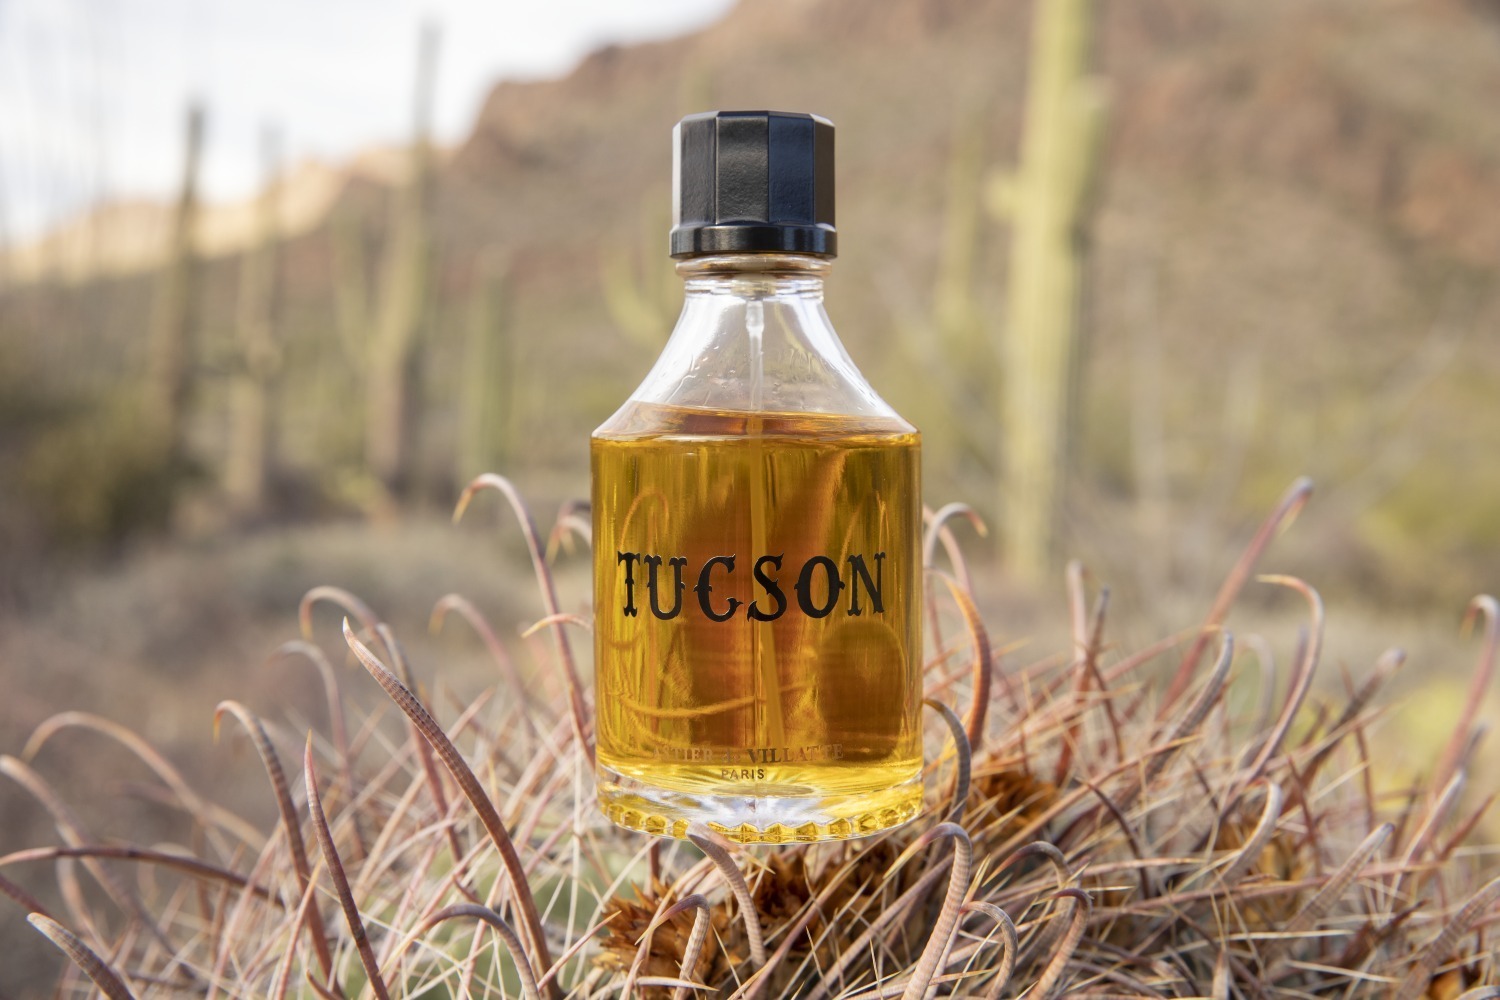 アスティエ・ド・ヴィラット“ブランド初”の香水「ツーソン」砂漠を思わ 